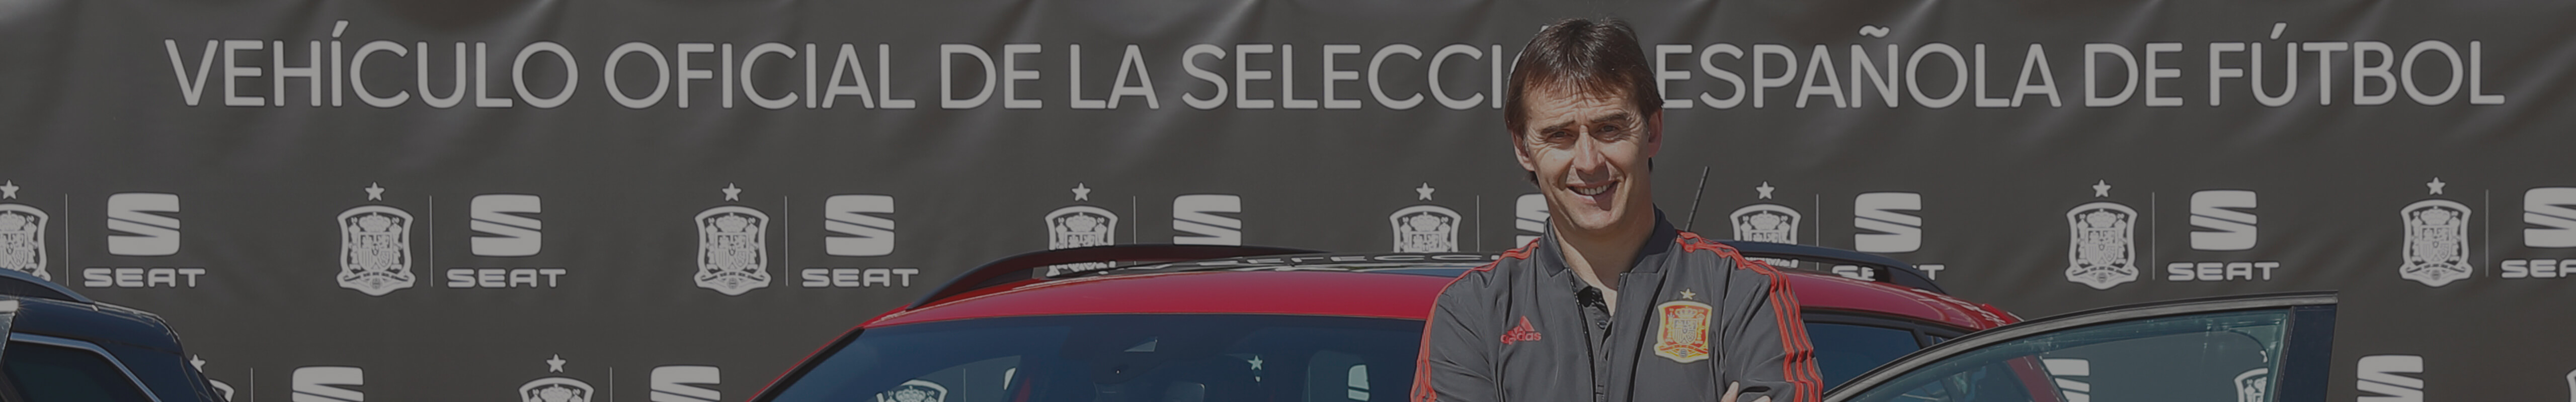 Lopetegui, sélectionneur de l'équipe nationale d'ESpagne devant le SUV SEAT Ateca - SEAT Sponsors de l'équipe nationale de football